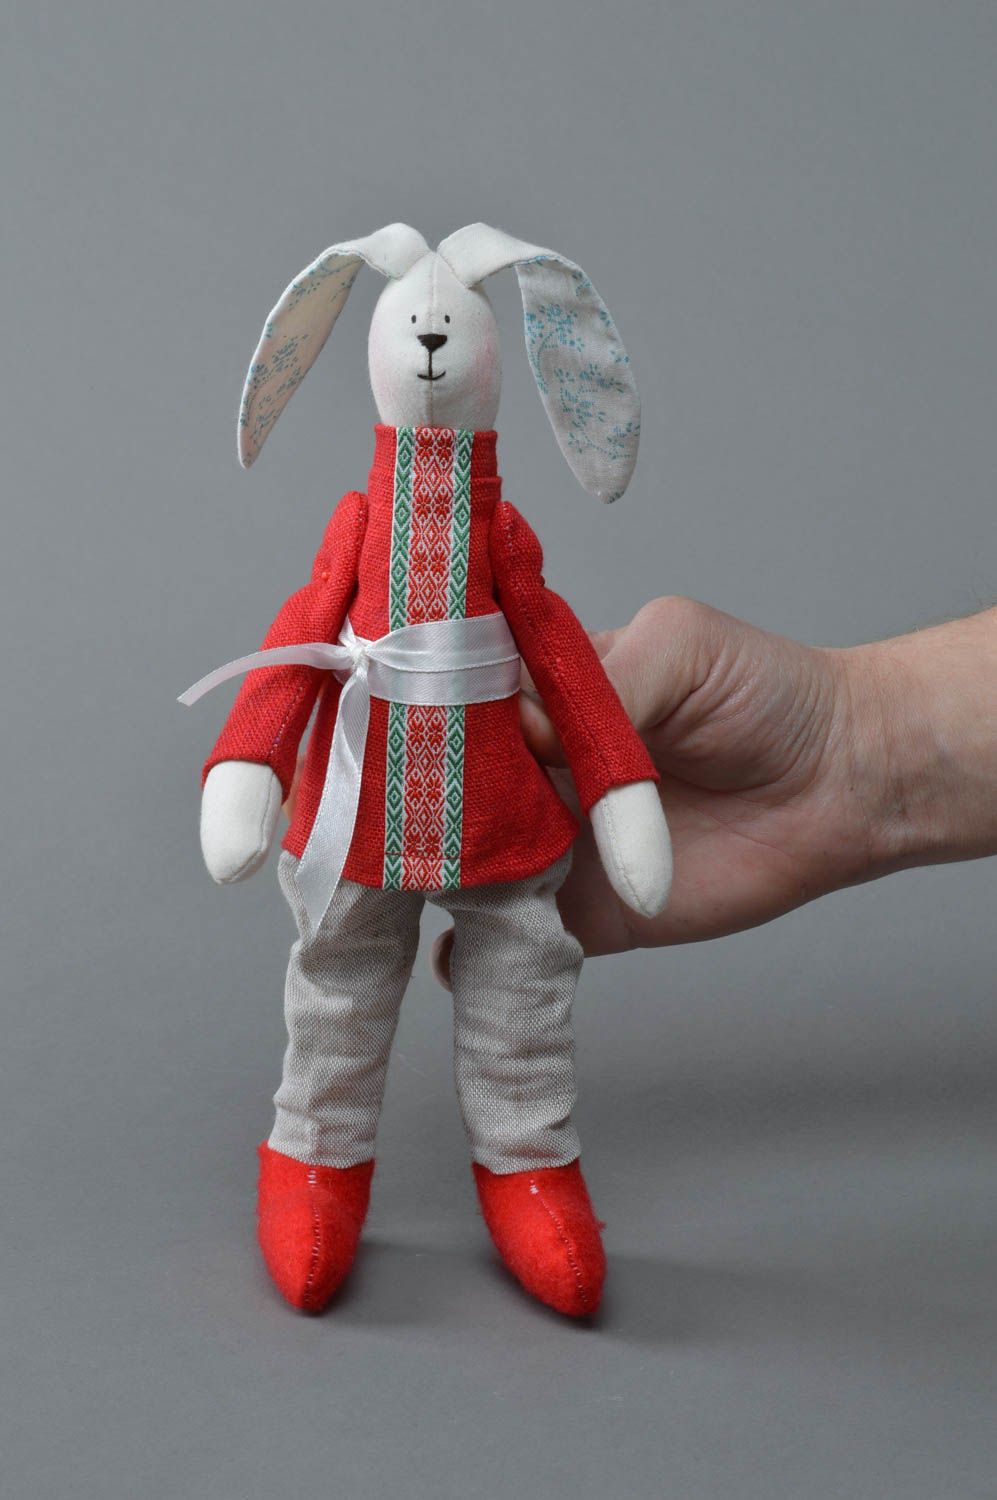 Тканевая игрушка ручной работы в виде зайца в костюме хлопковая для детей или декора дома фото 1